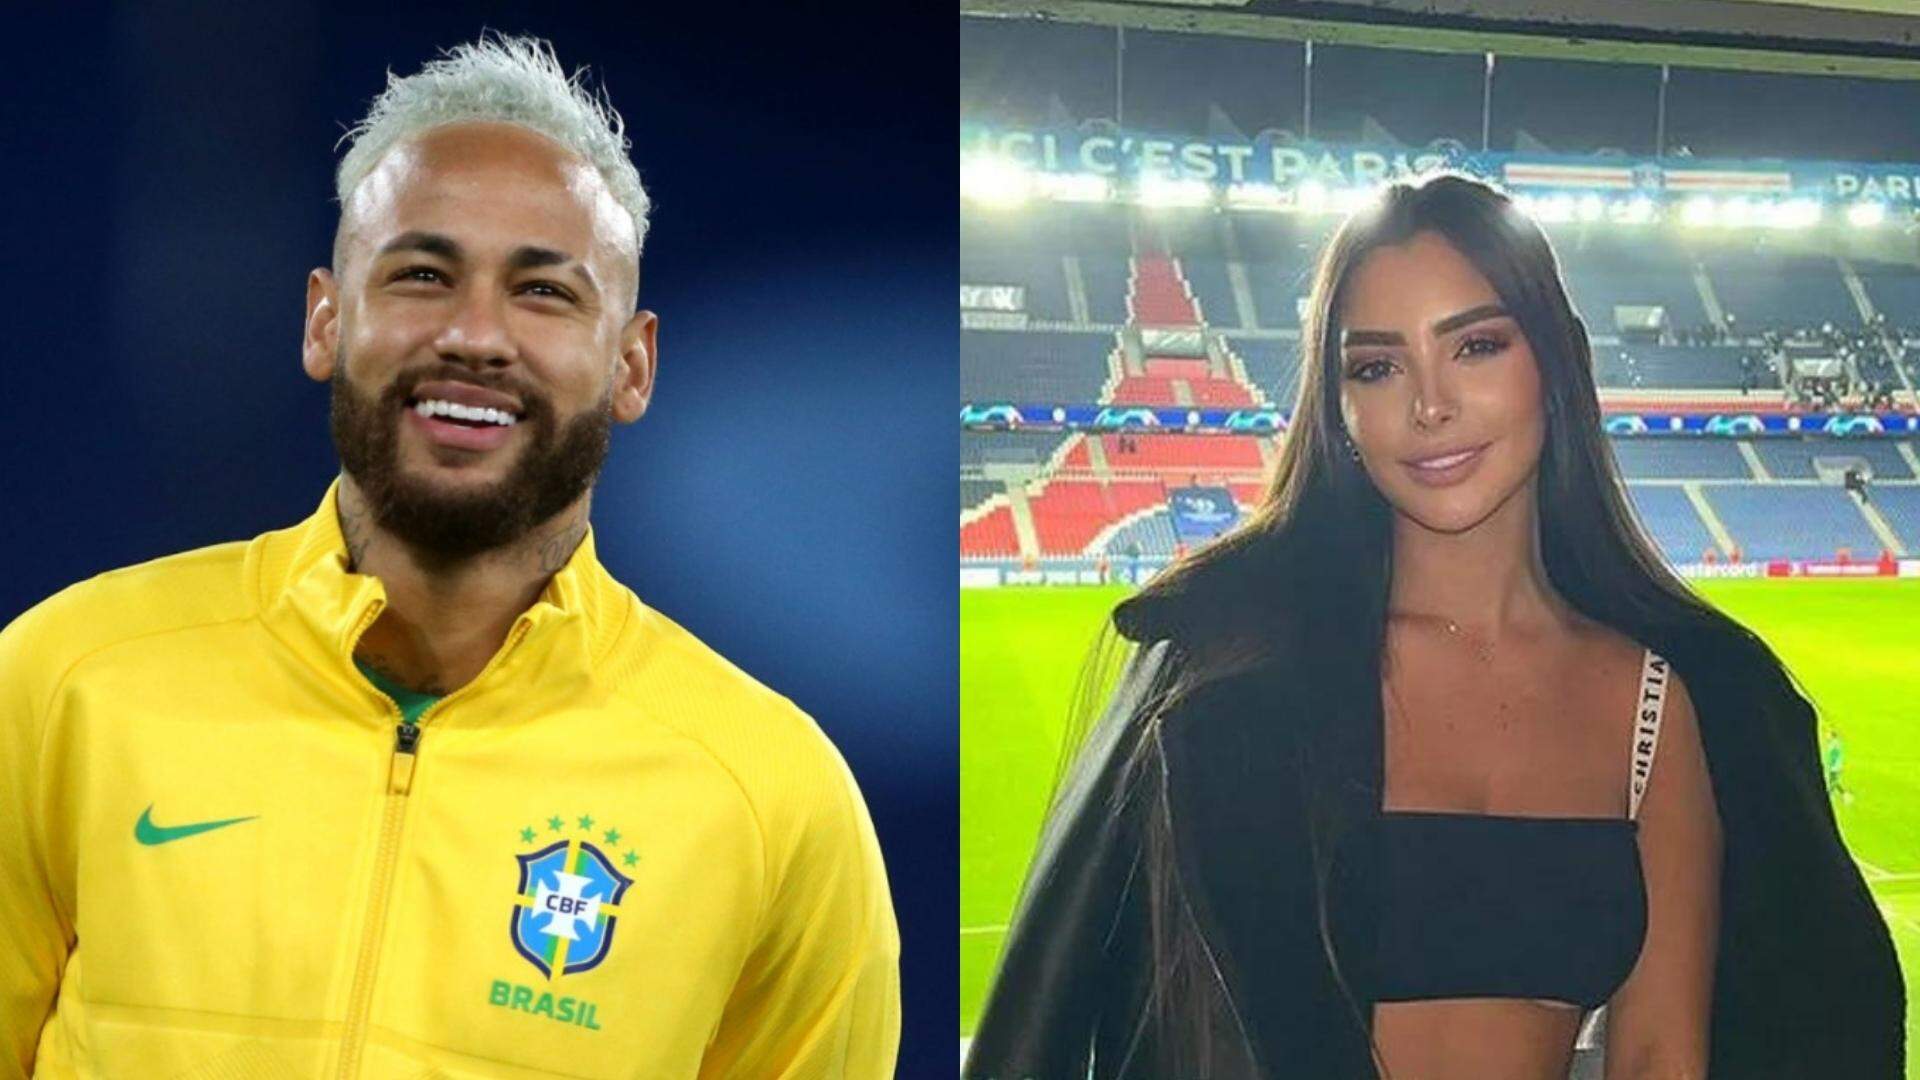 Tá rolando? Fãs especulam suposto relacionamento entre Neymar e influencer venezuelana - Metropolitana FM